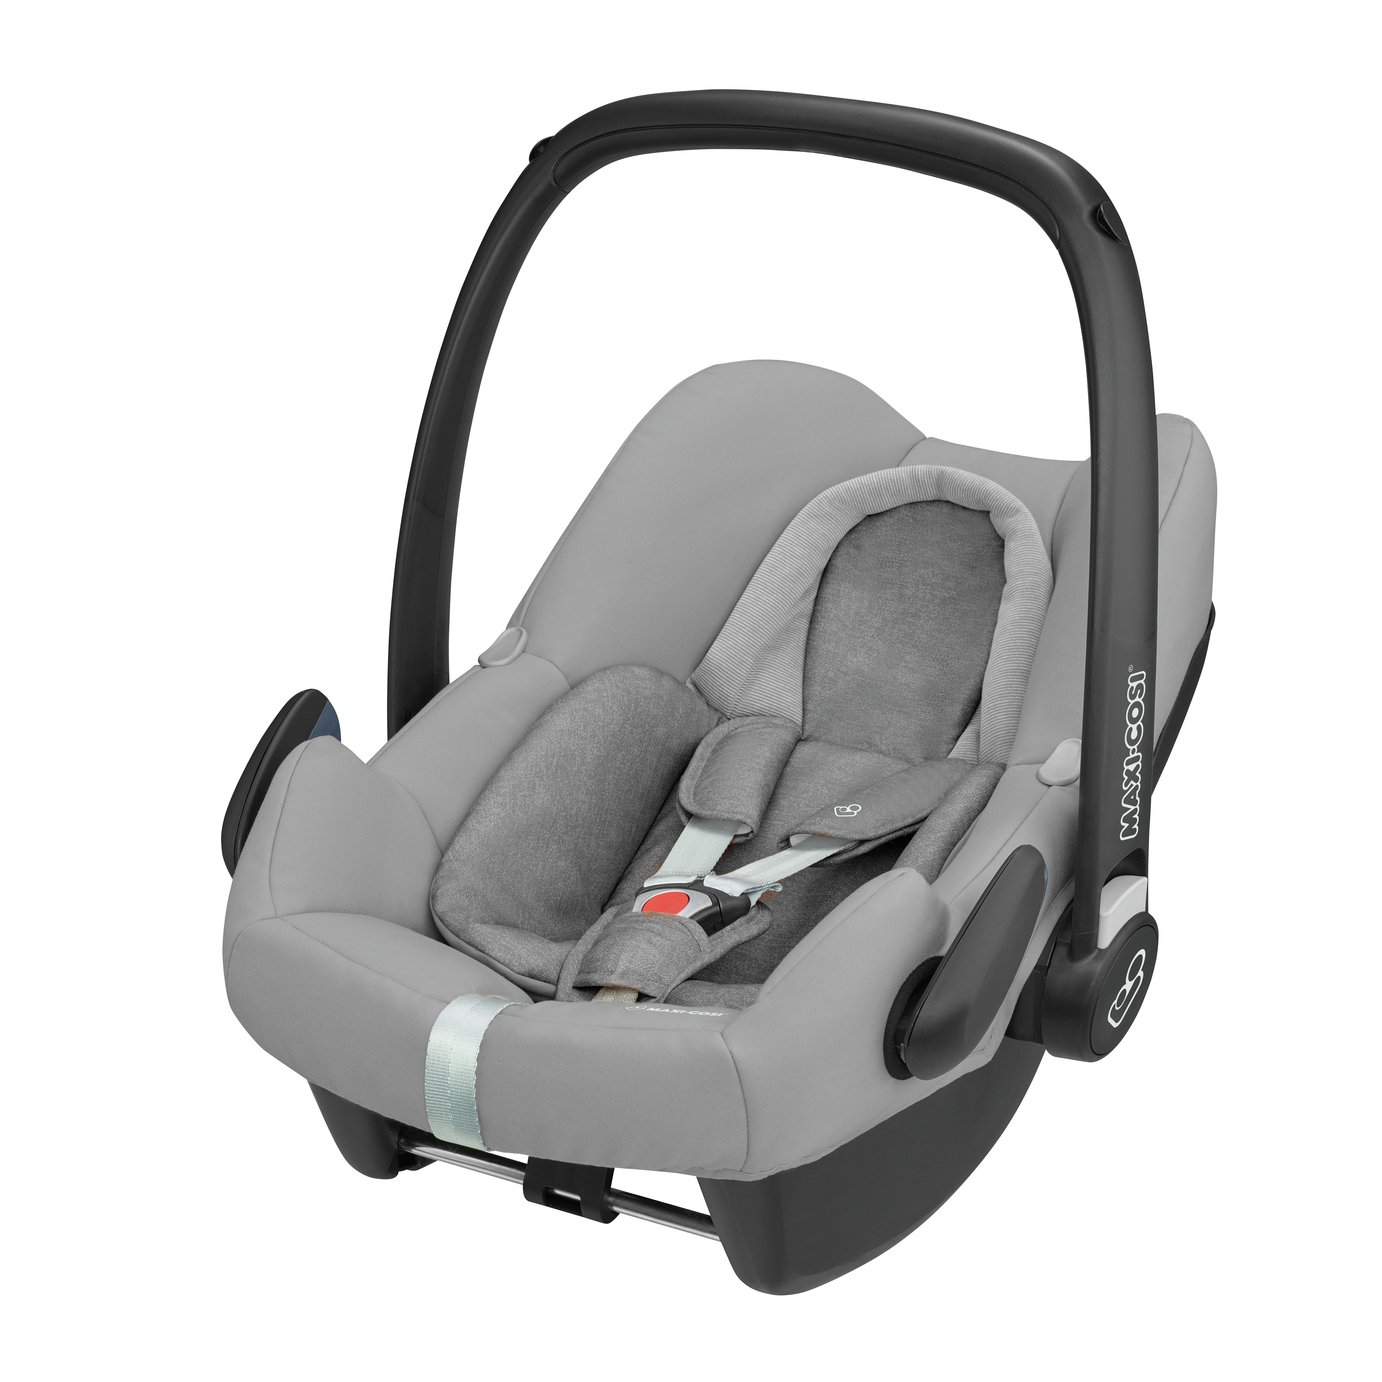 Maxi-Cosi Rock Group 0+ i-Size Baby Car Seat - Nomad Grey